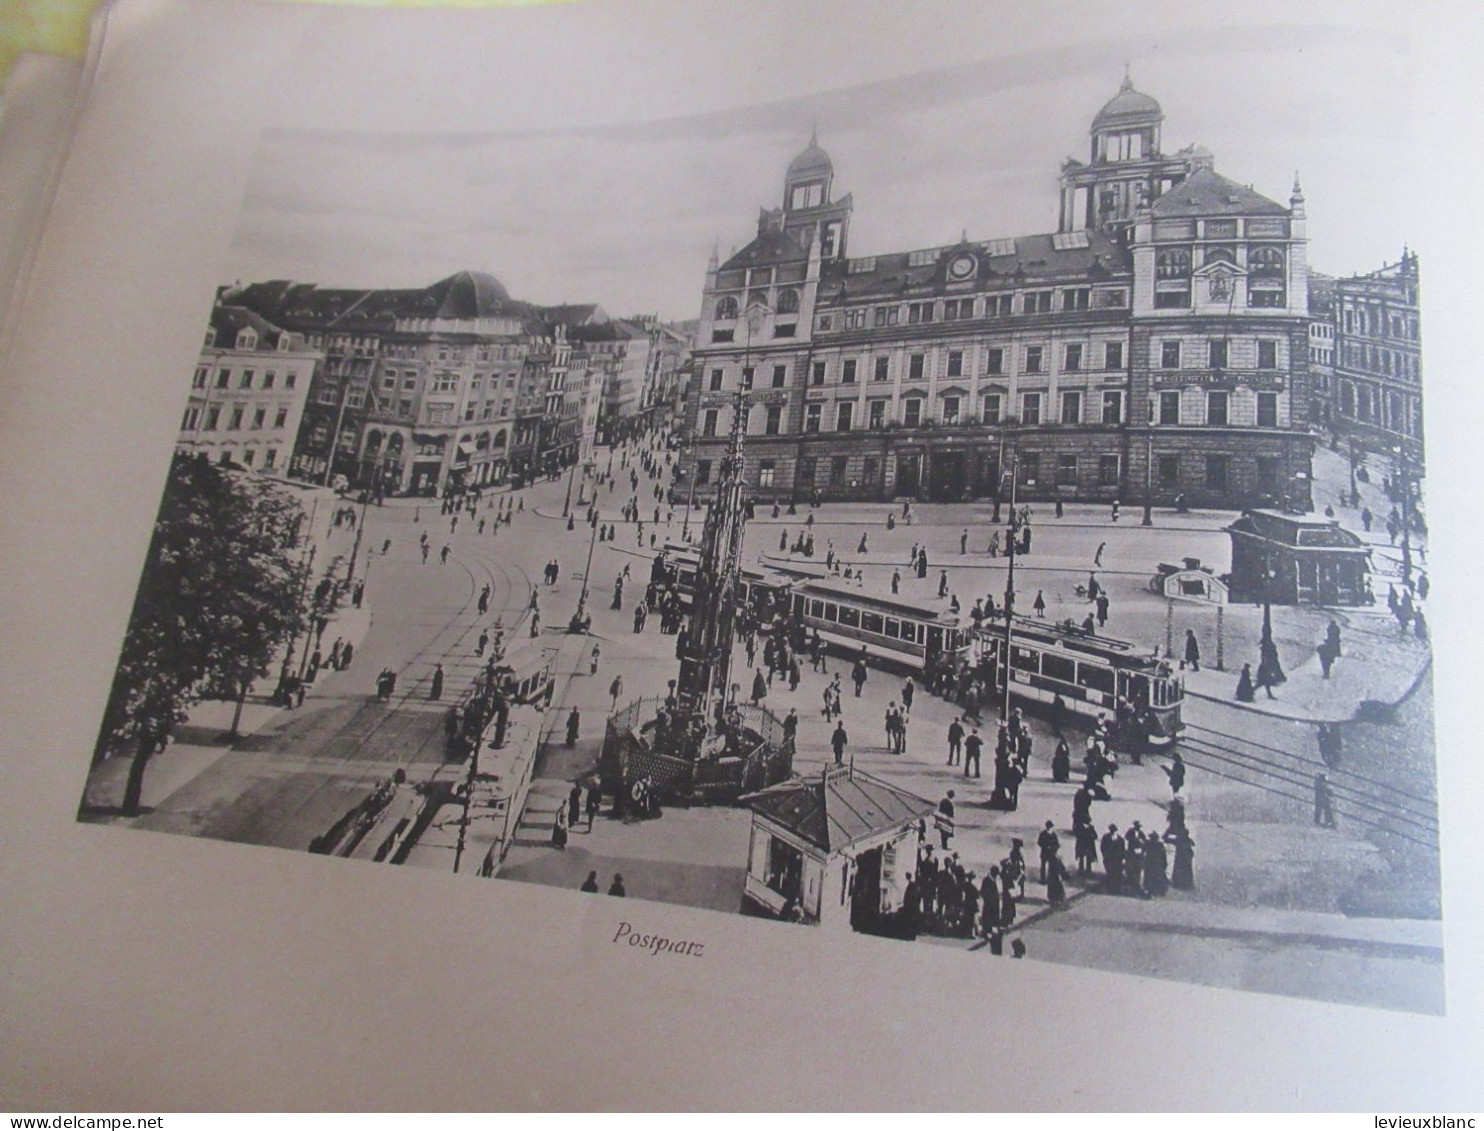 Grand Album ancien illustré/Allemagne/Ville de Dresde/Saxe/ " Album Von DRESDEN " /Alwin KIEL/Vers 1890-1905      PGC571